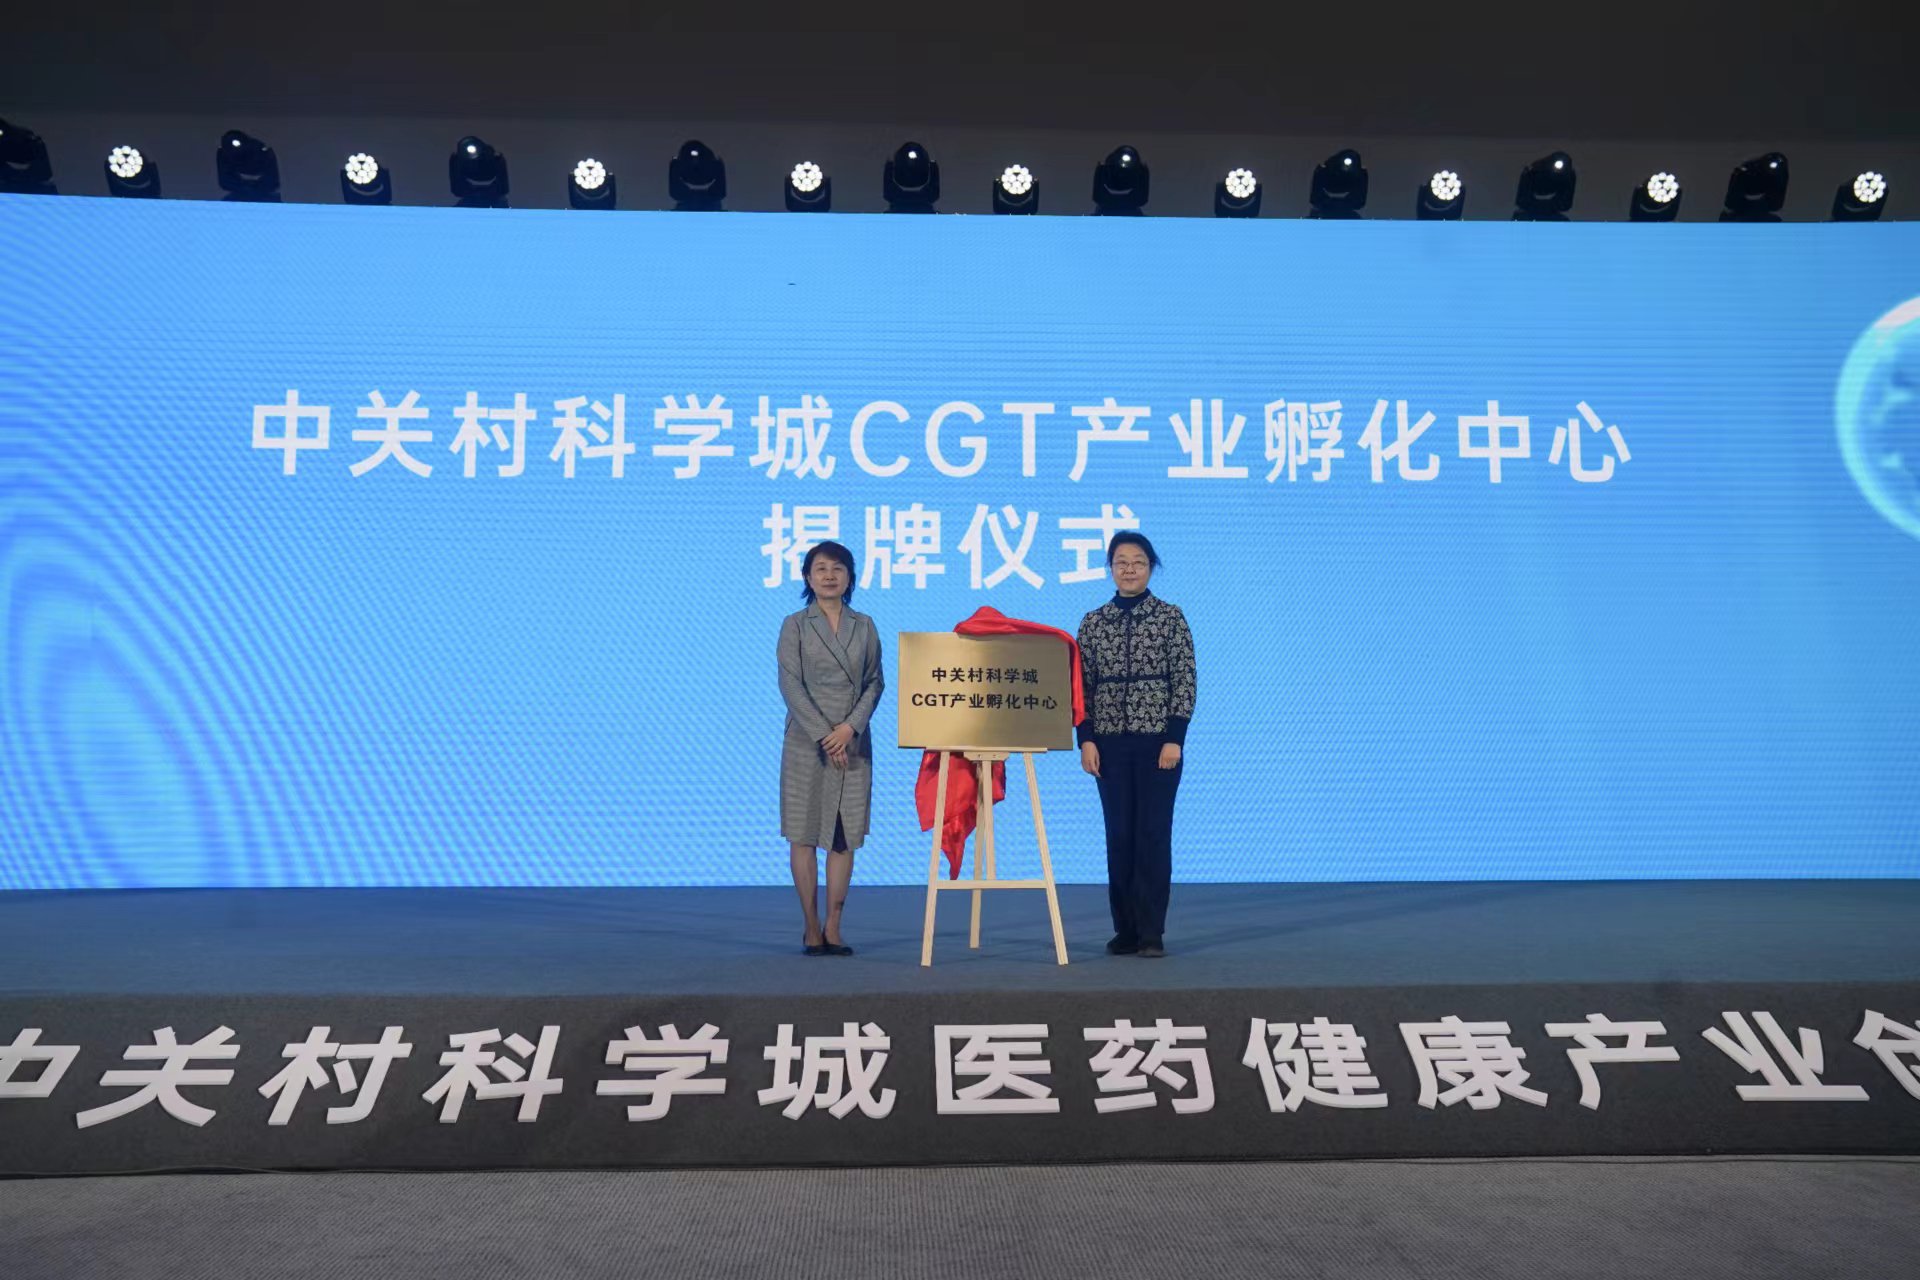 嘉賓為中關村科學城CGT產業孵化中心揭牌。新京報記者 浦峰 攝